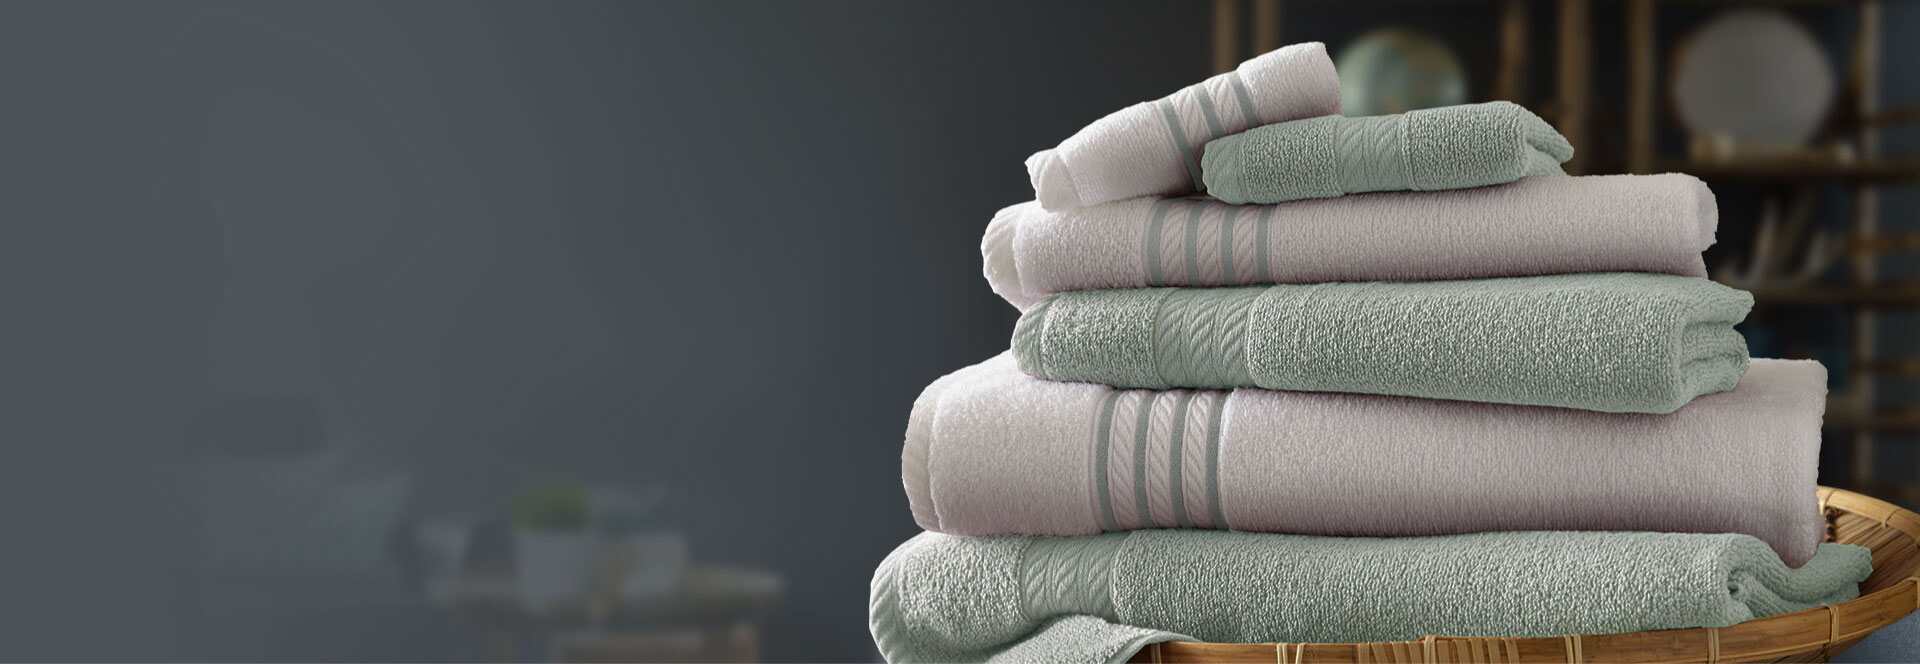 towel wholesale market